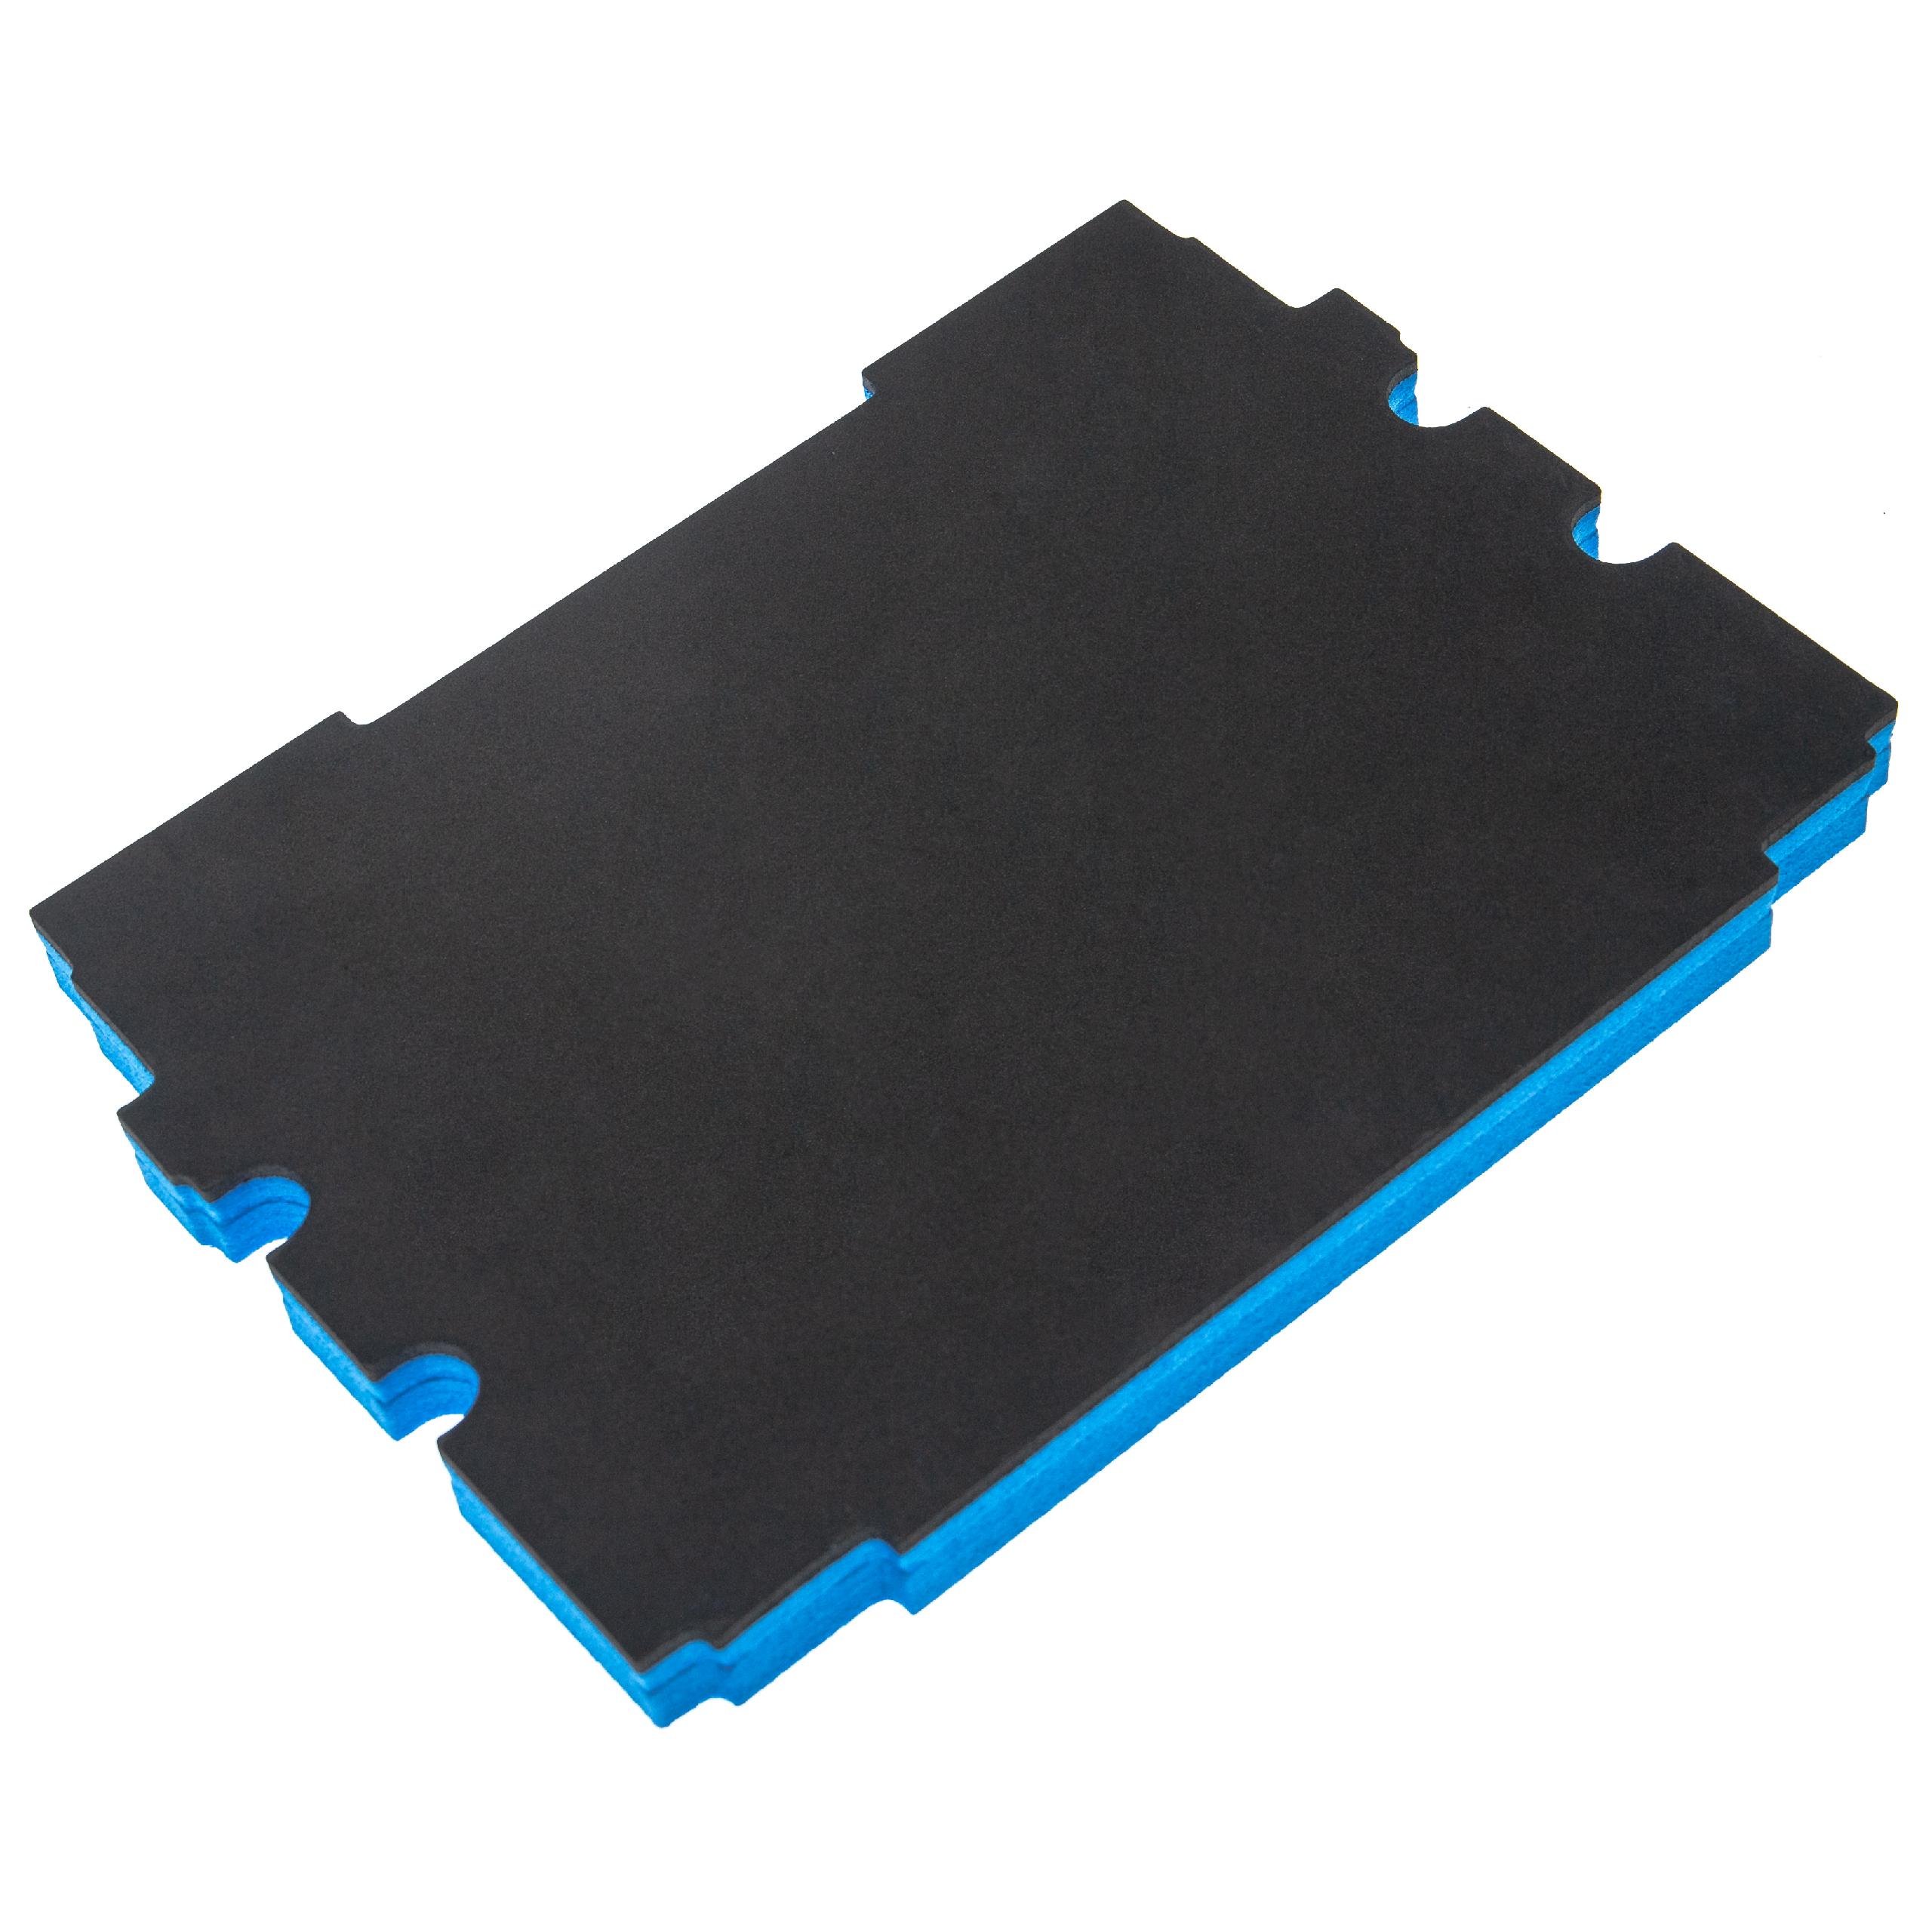 vhbw Hard Foam Insert for Makita MakPac Toolbox -rigid foam, 30 mm Blue, 30 mm